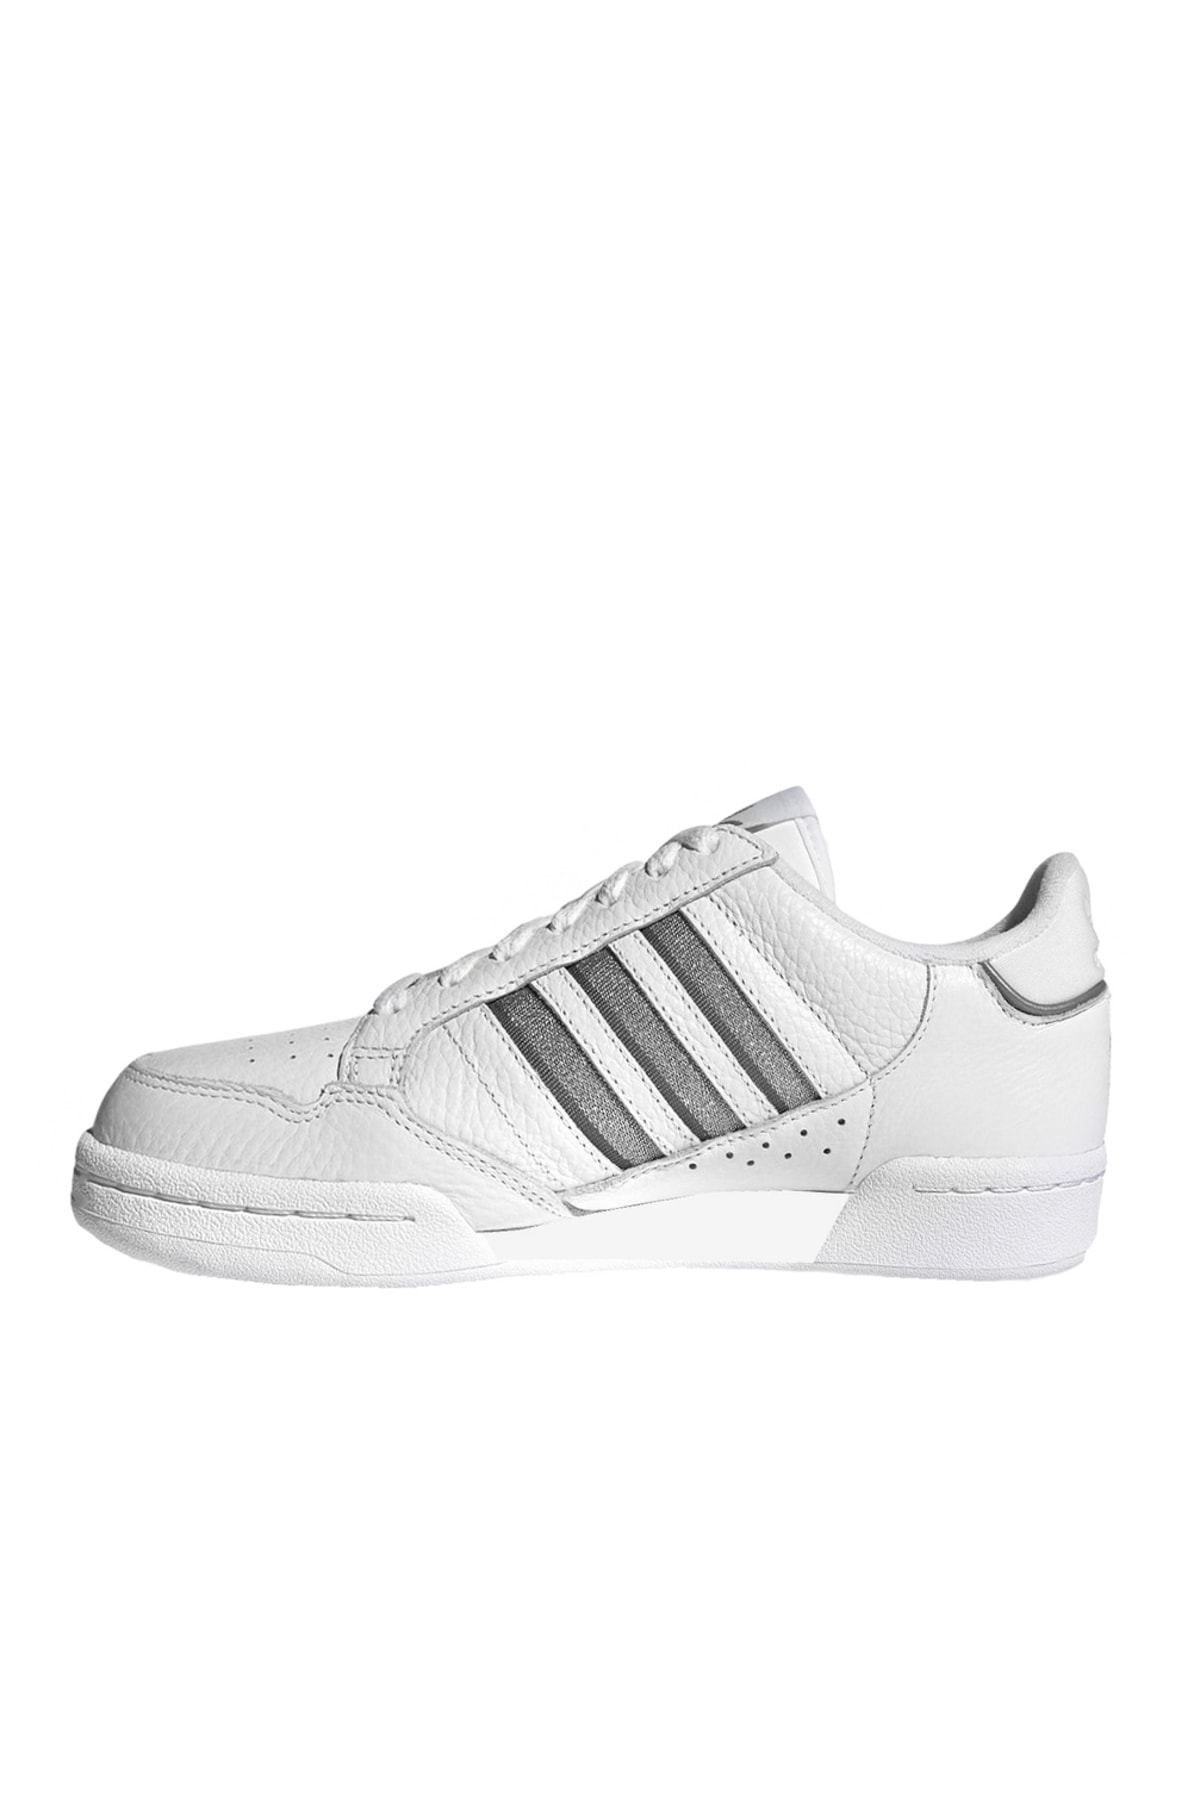 Кроссовки - Белый Плоские adidas, Adidas